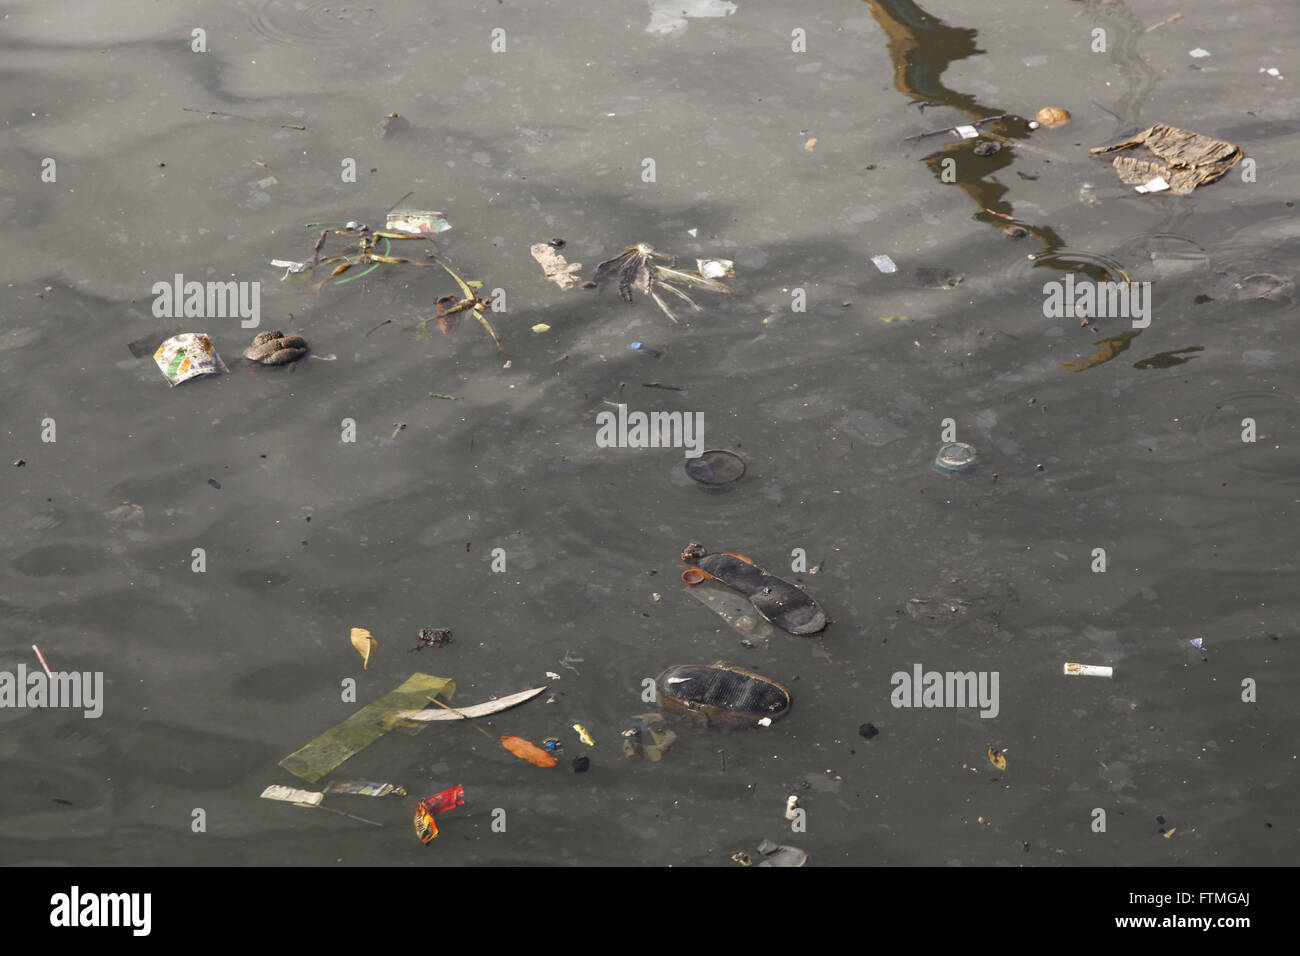 Détail de la saleté et la pollution dans la baie de Guanabara au moment de Caju Banque D'Images